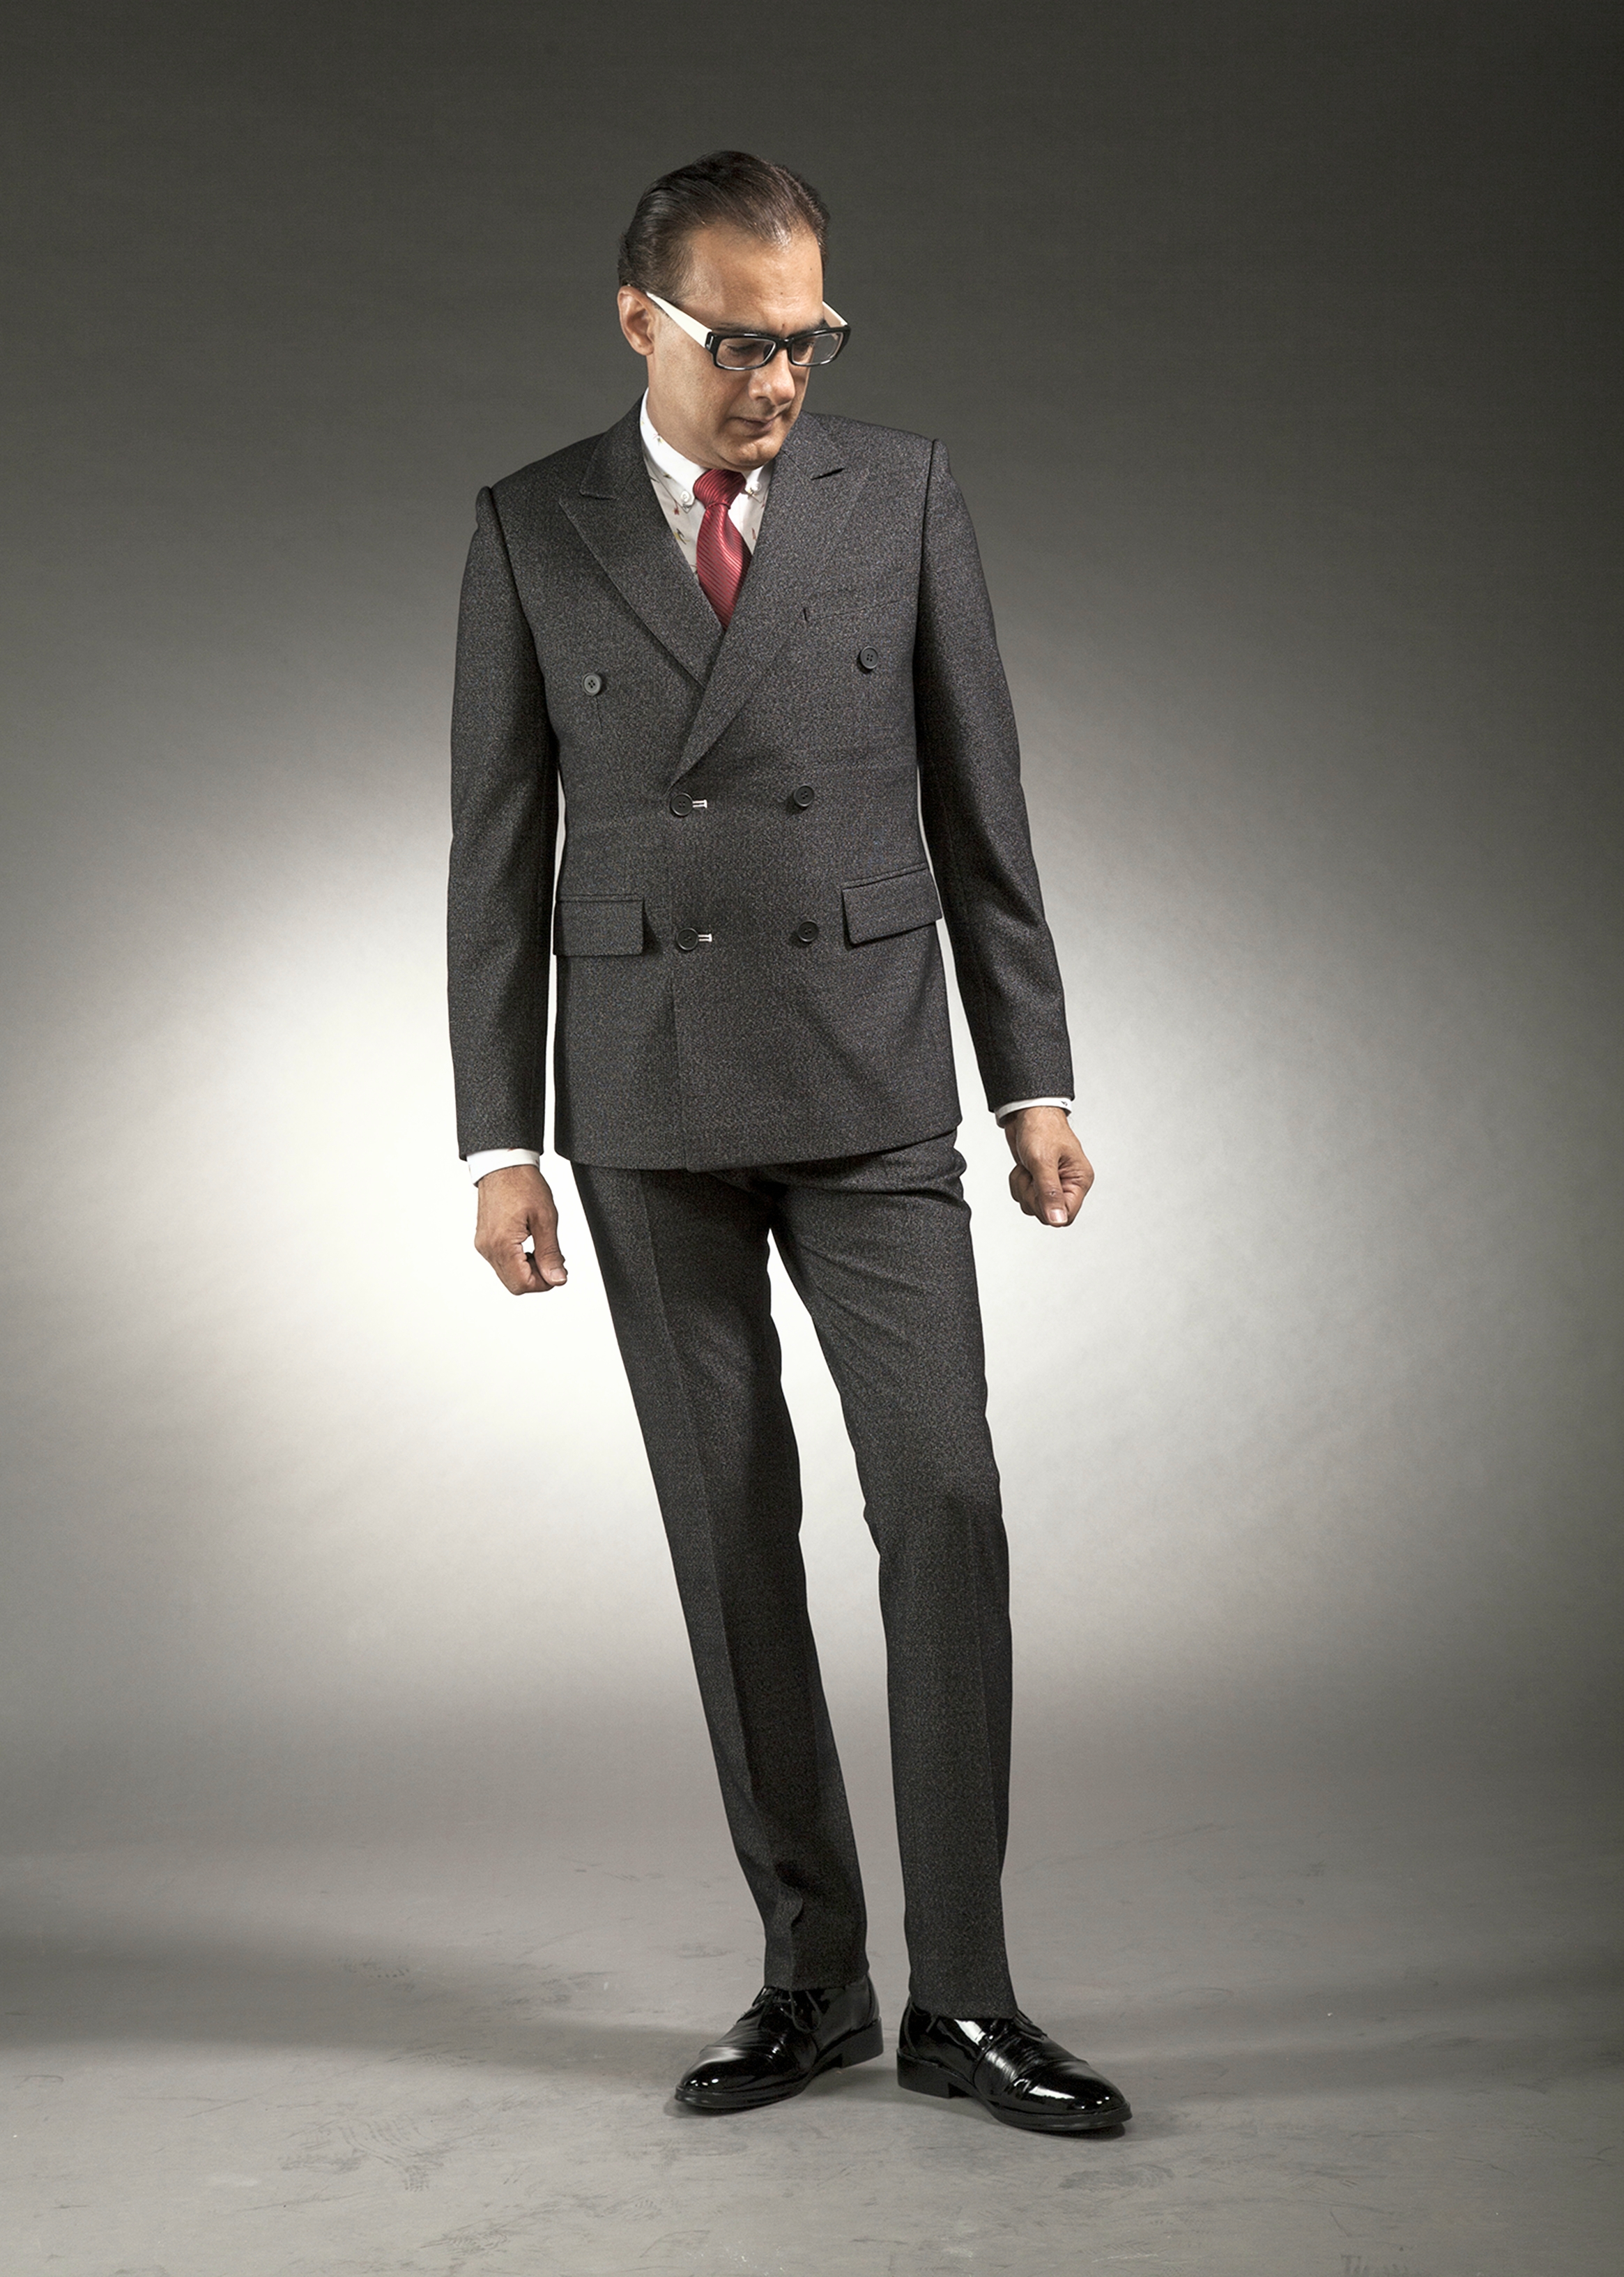 Mst 5042 01 Rent Rental Hire Tuxedo Suit Black Tie Suit Designer Suits Shop Tailor